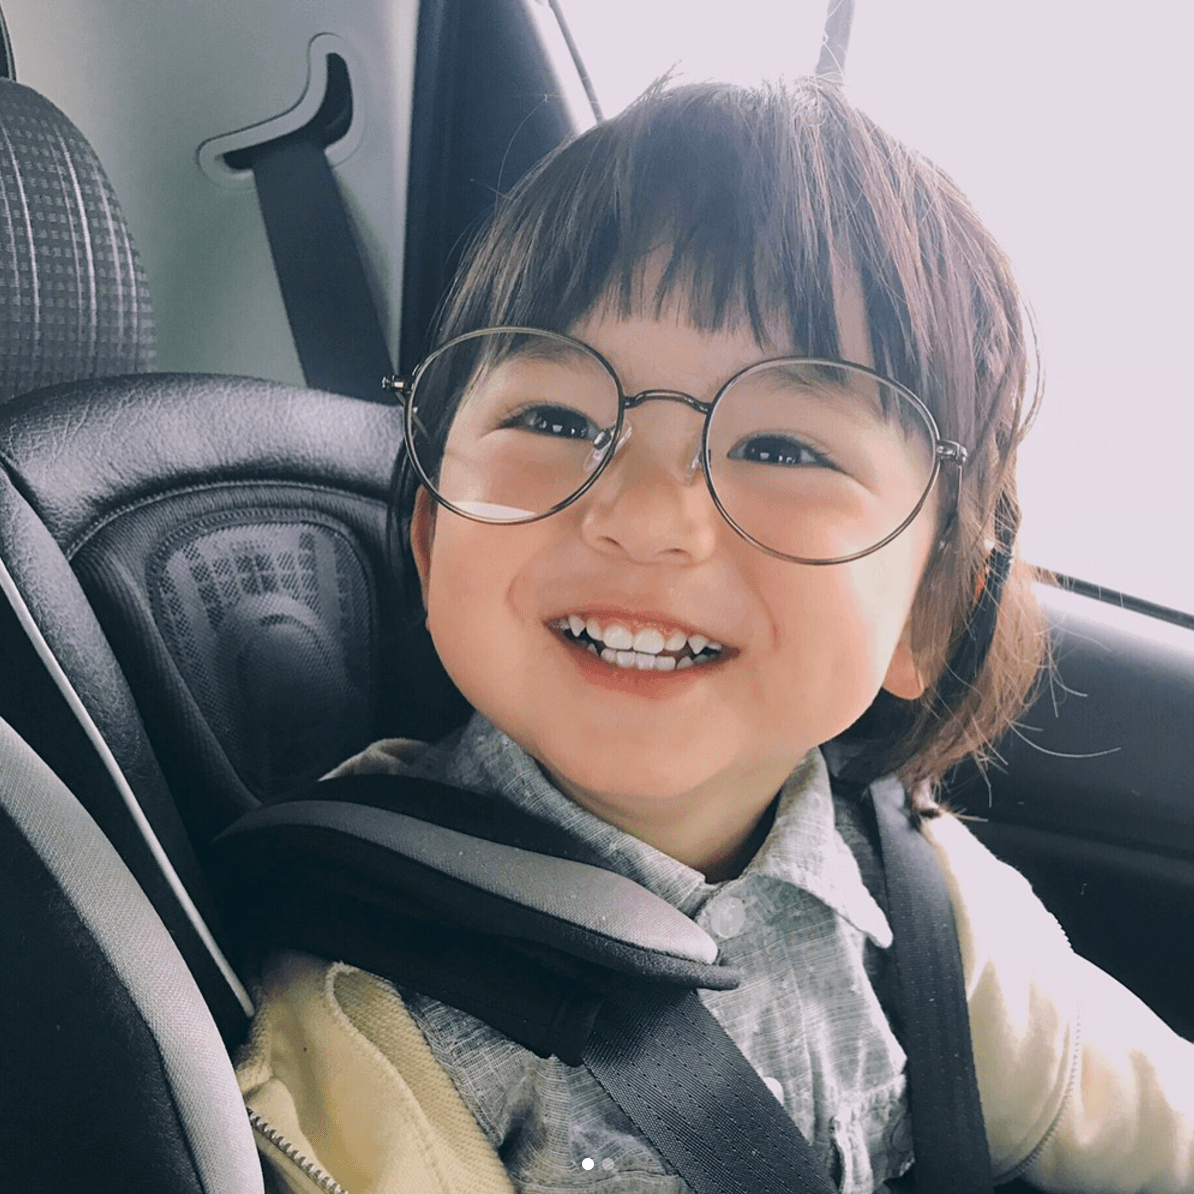 Hãy đến xem những bức ảnh cực dễ thương của em bé Nhật trên Instagram đầy màu sắc và hồn nhiên. Những khoảnh khắc ngọt ngào của bé sẽ chắc chắn làm bạn nở nụ cười và cảm thấy ấm áp trong trái tim mình.